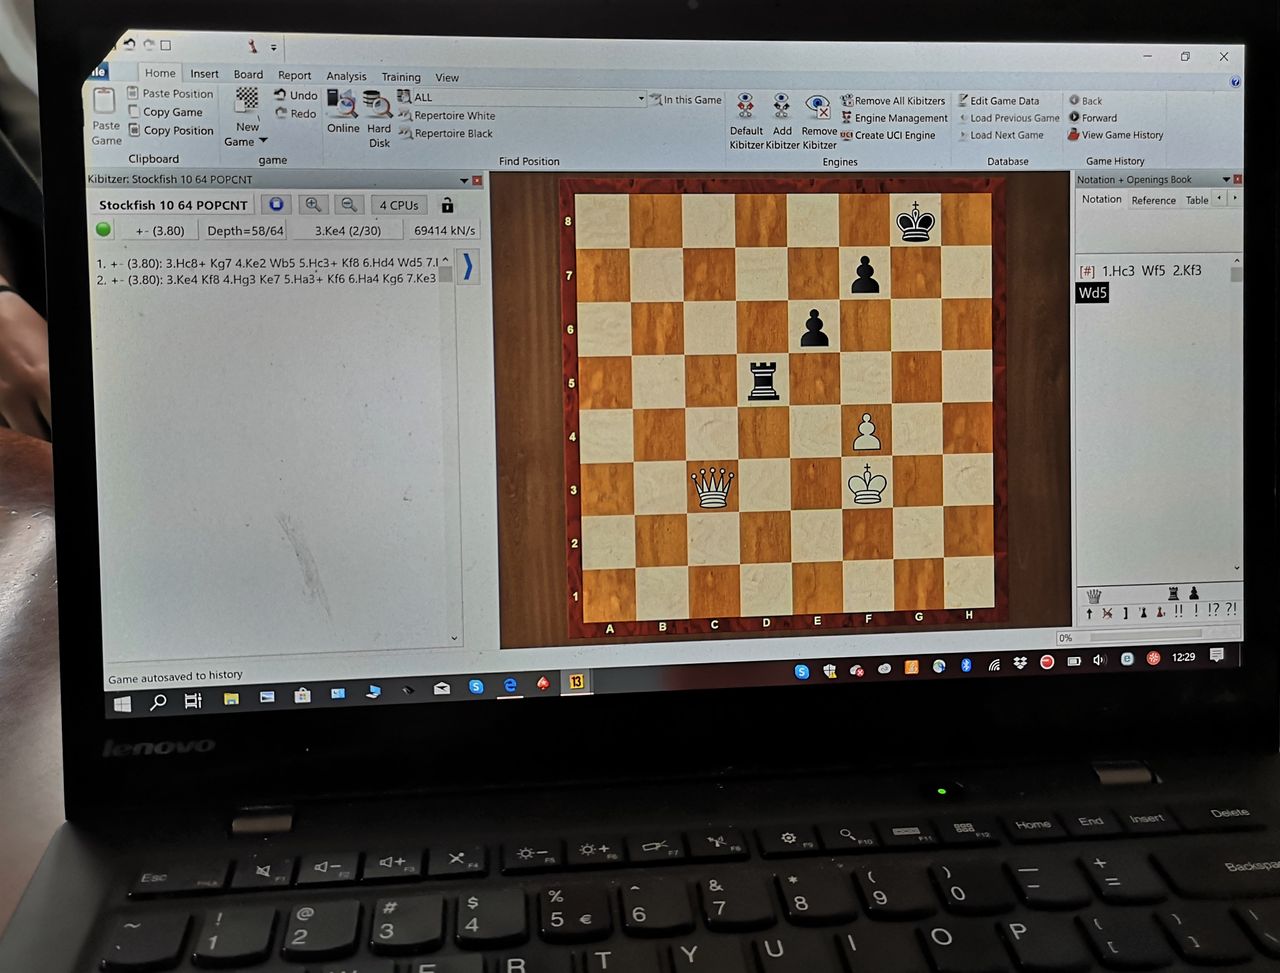 Codzienne narzędzie pracy Jana-Krzysztofa Dudy to intensywnie wykorzystywany laptop służący do analizy wybranych sytuacji na szachownicy.